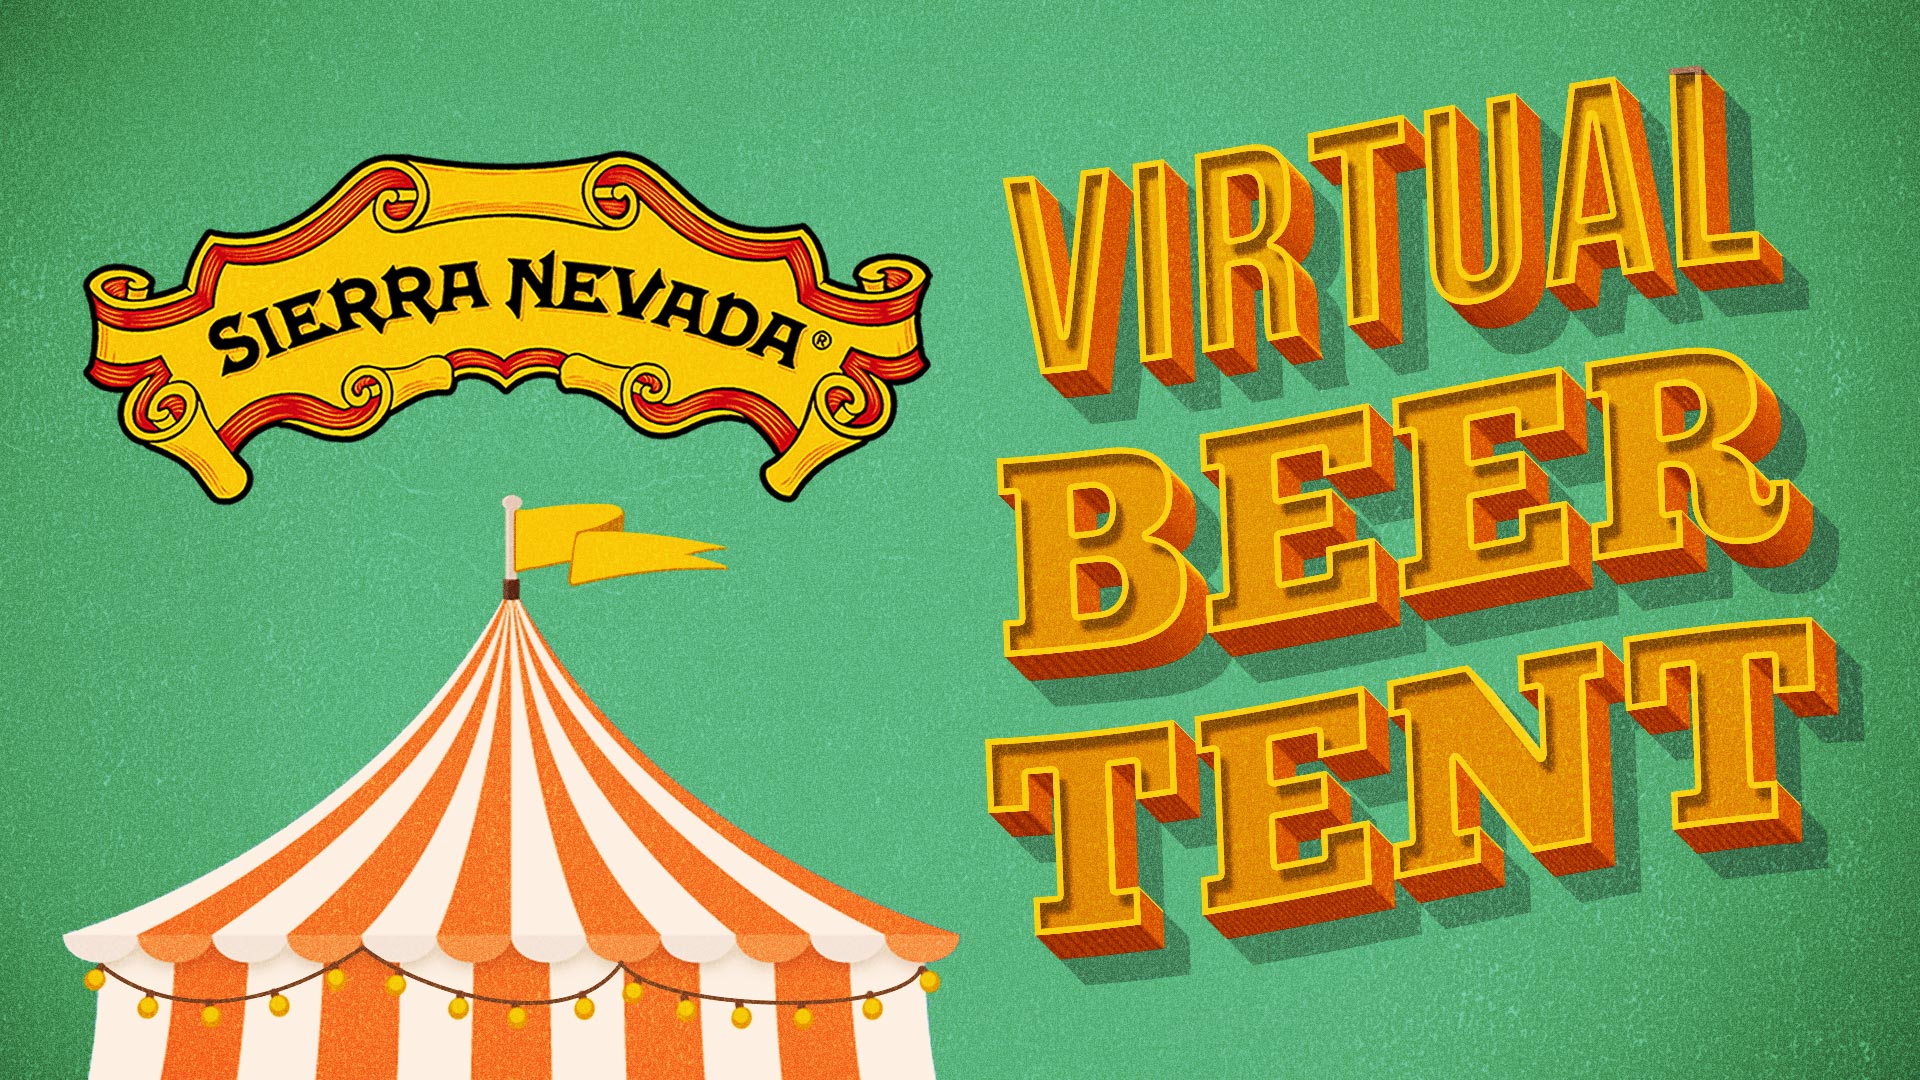 Sierra Nevada Virtual Beer Tent